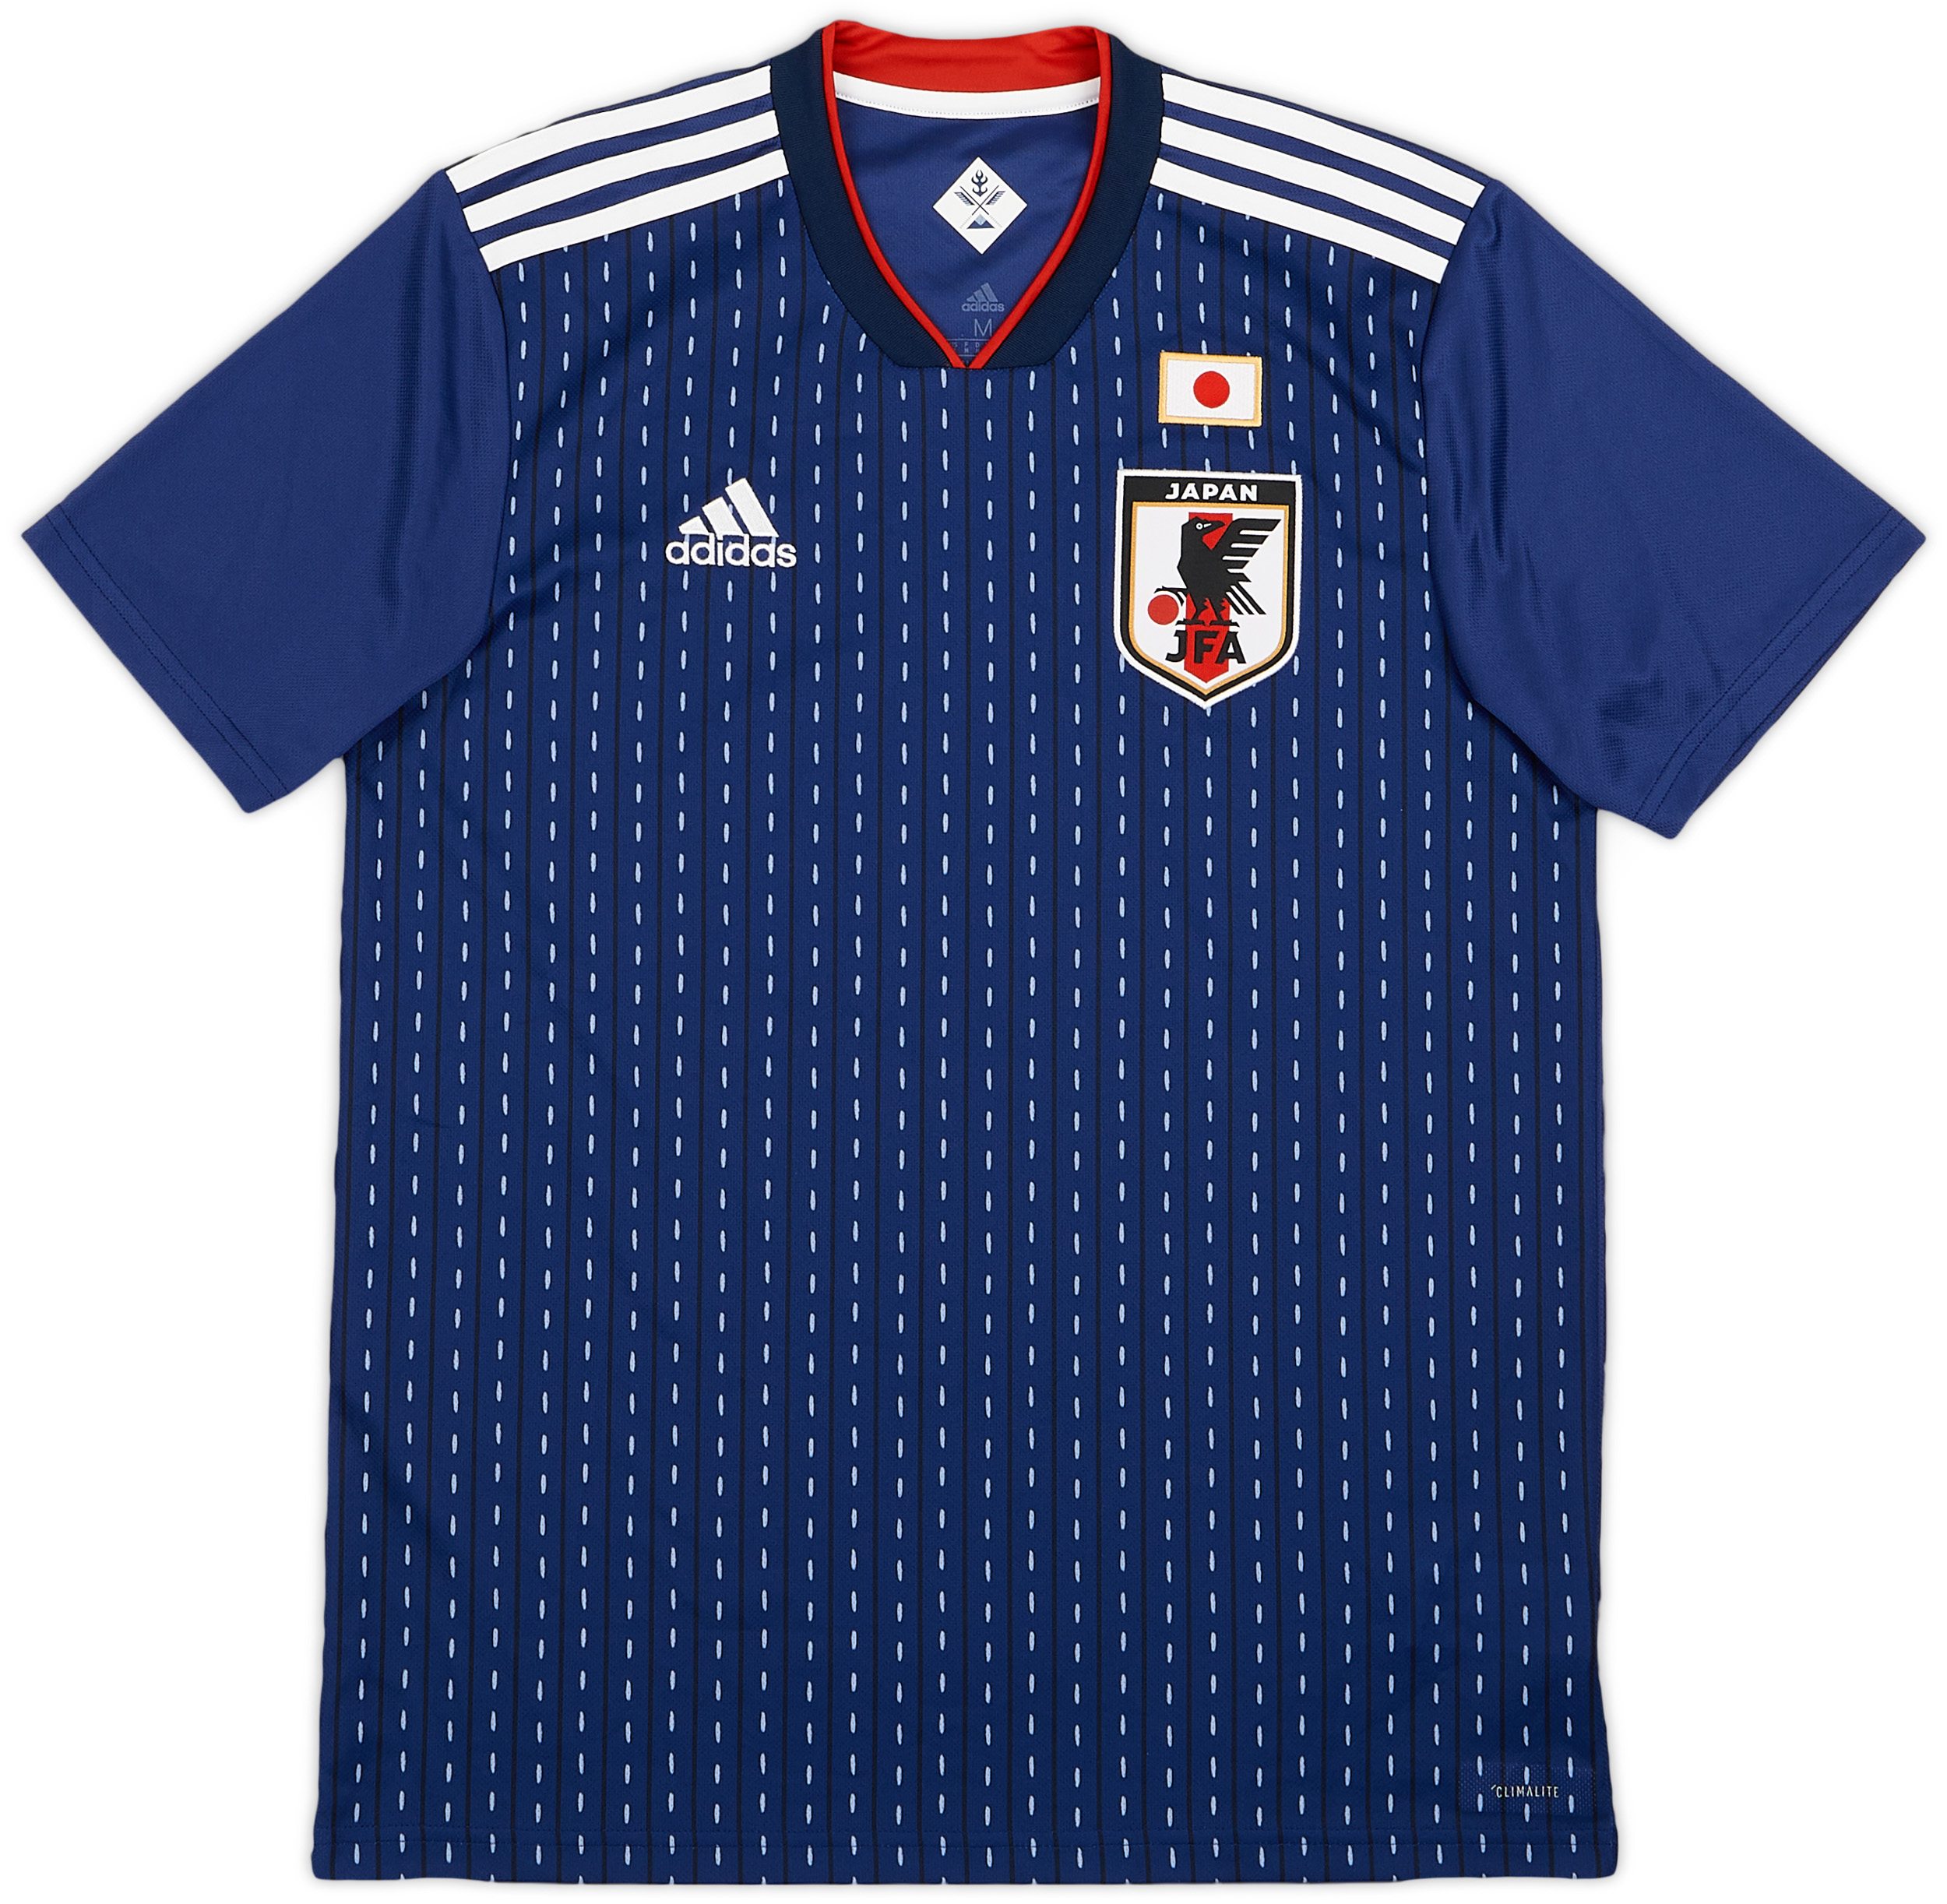 Retro Japan Shirt